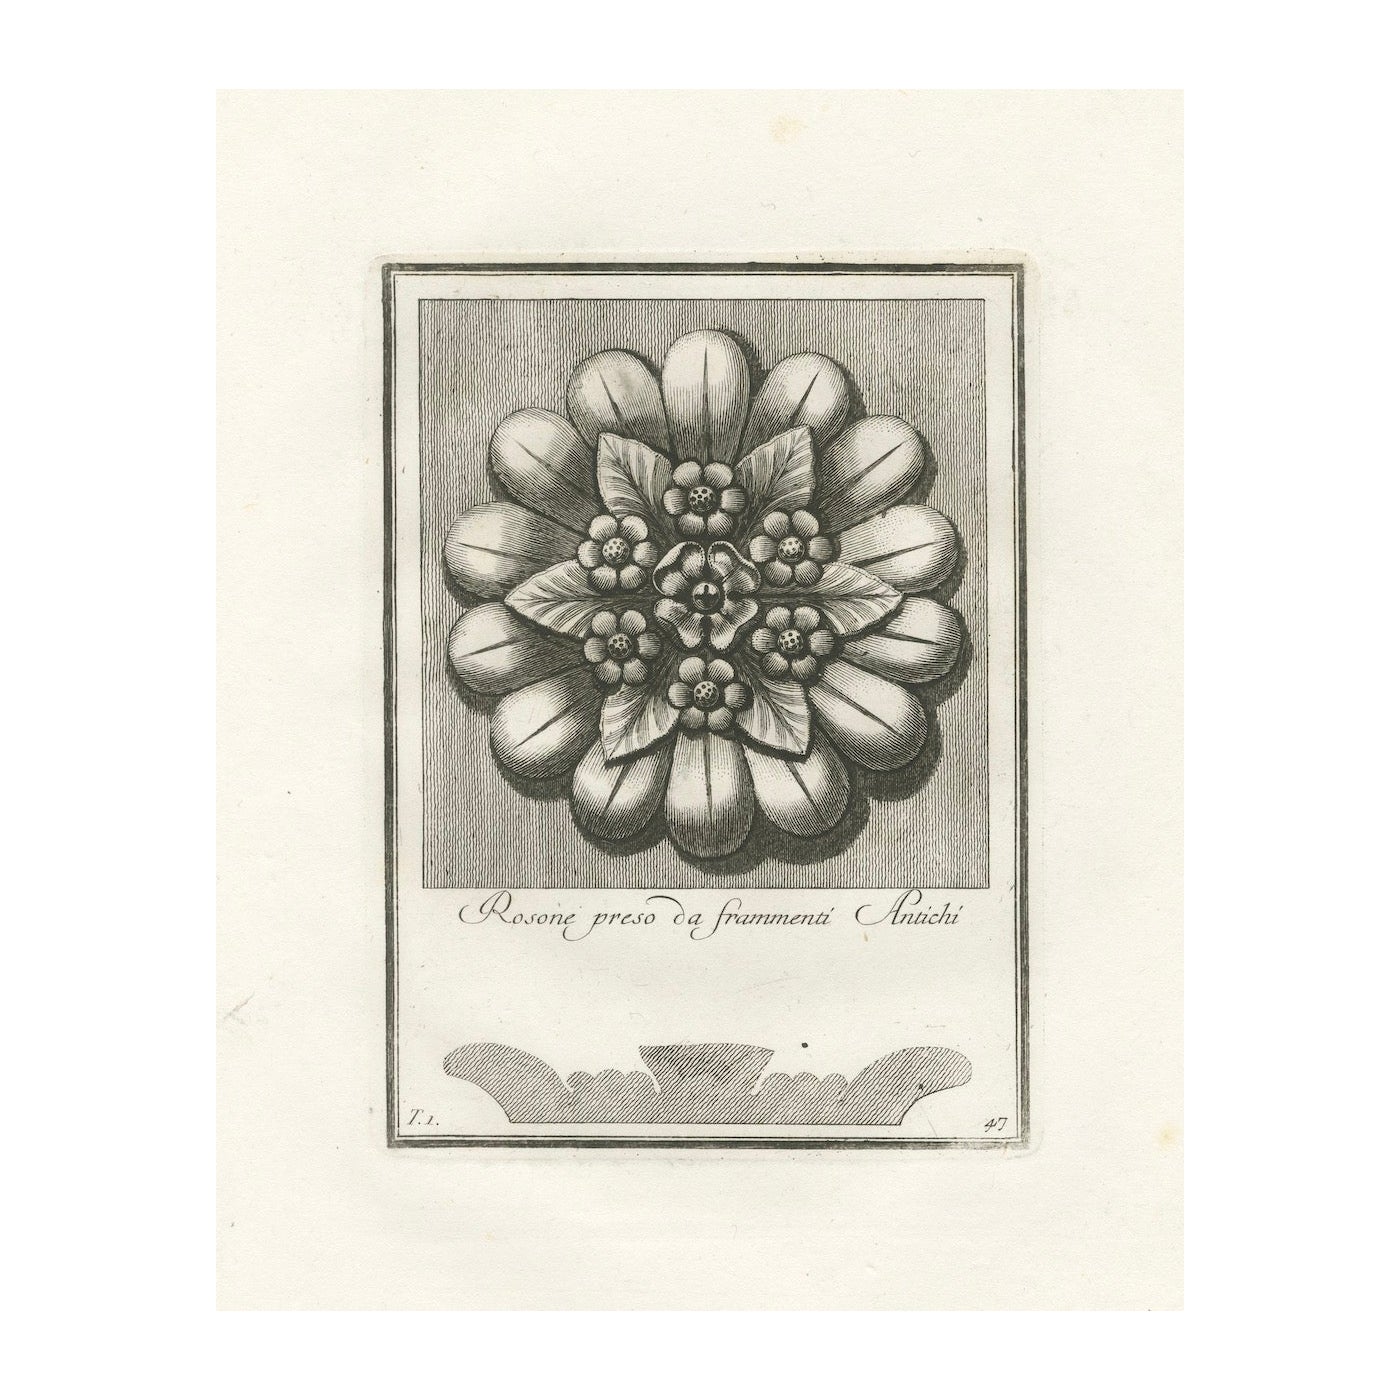 Majesté florale : Assiette à rosette 47 gravée d'après Antiquities, vers 1780